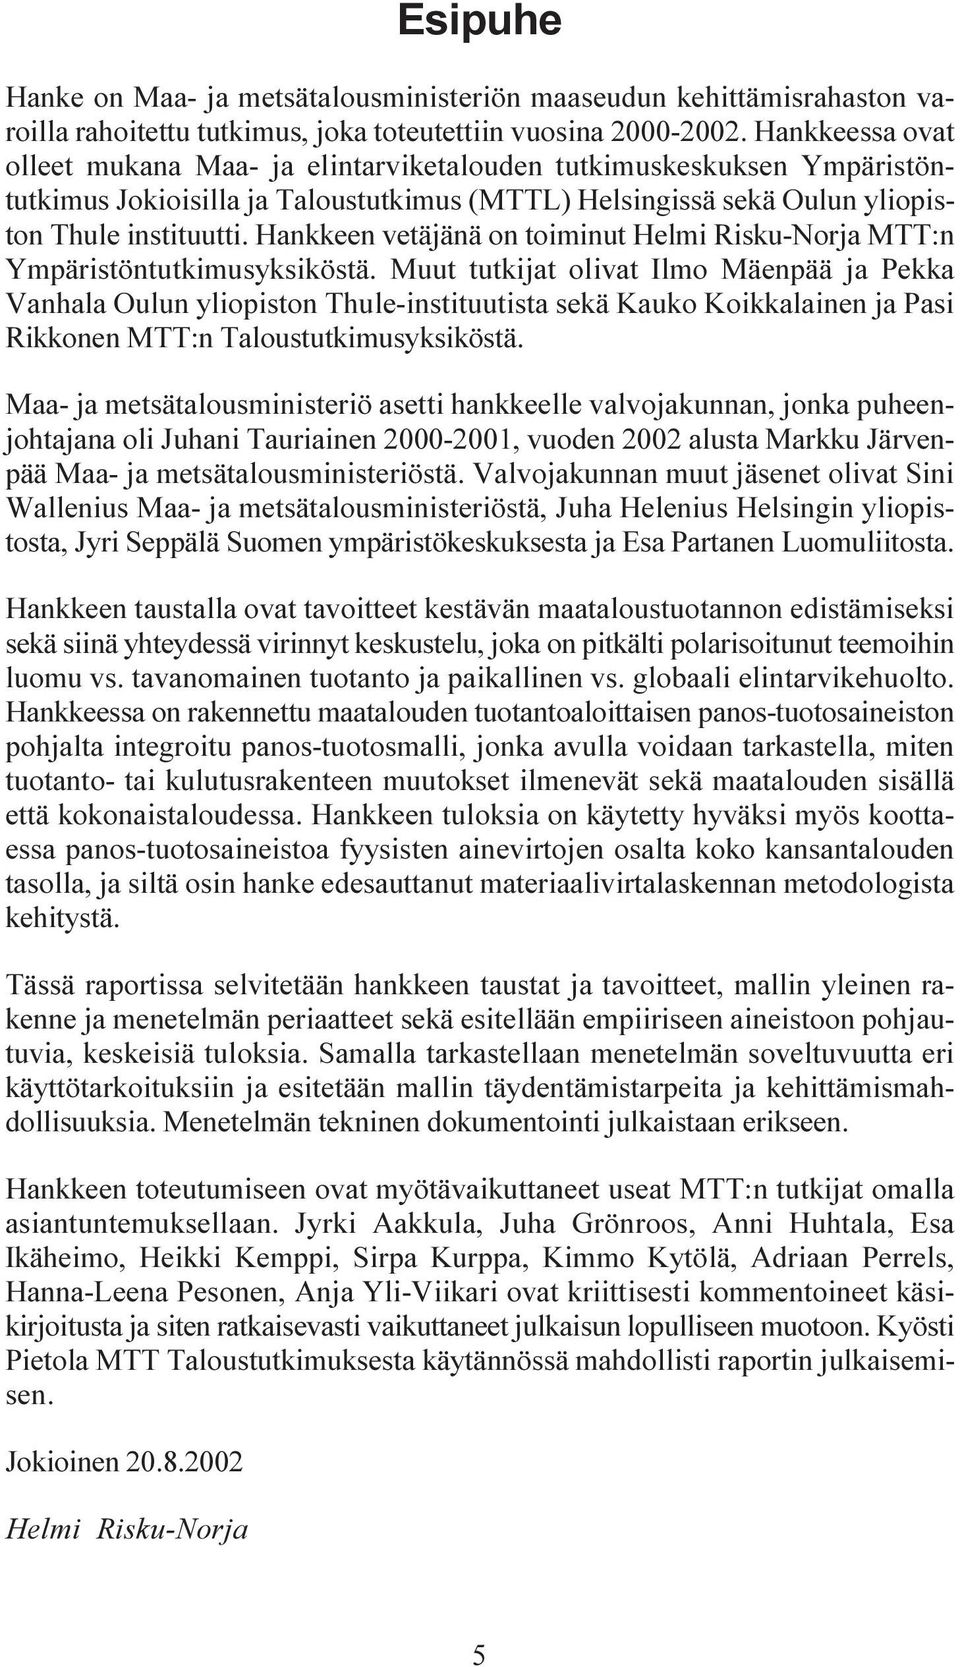 Hankkeen vetäjänä on toiminut Helmi Risku-Norja MTT:n Ympäristöntutkimusyksiköstä.